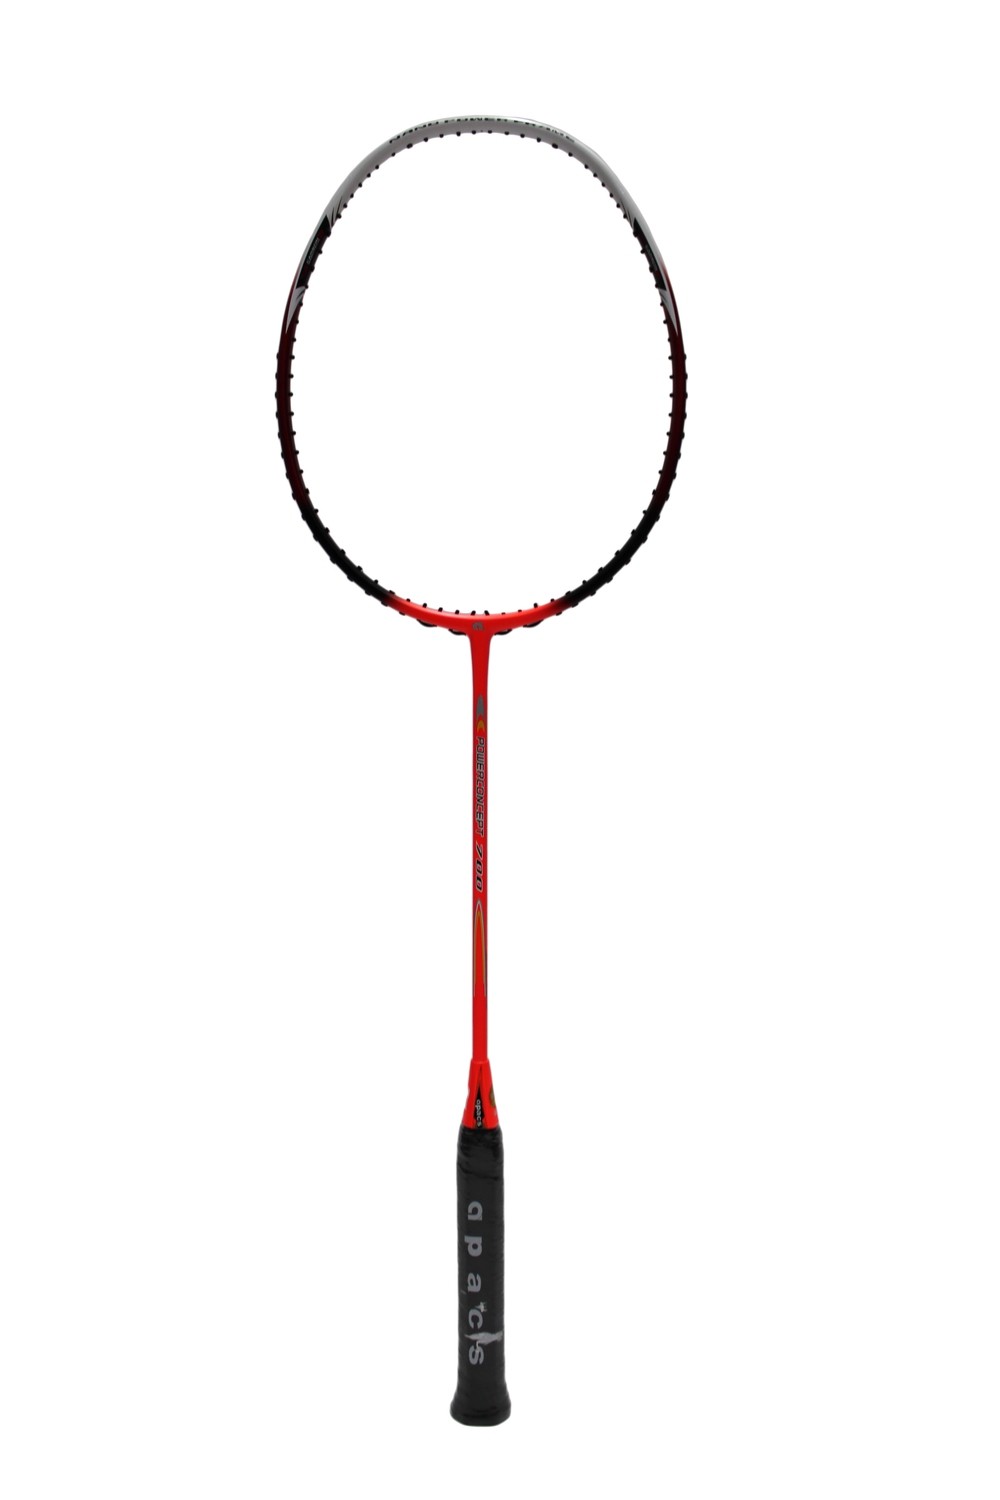 Apacs Power Concept 700 Badminton Racquet